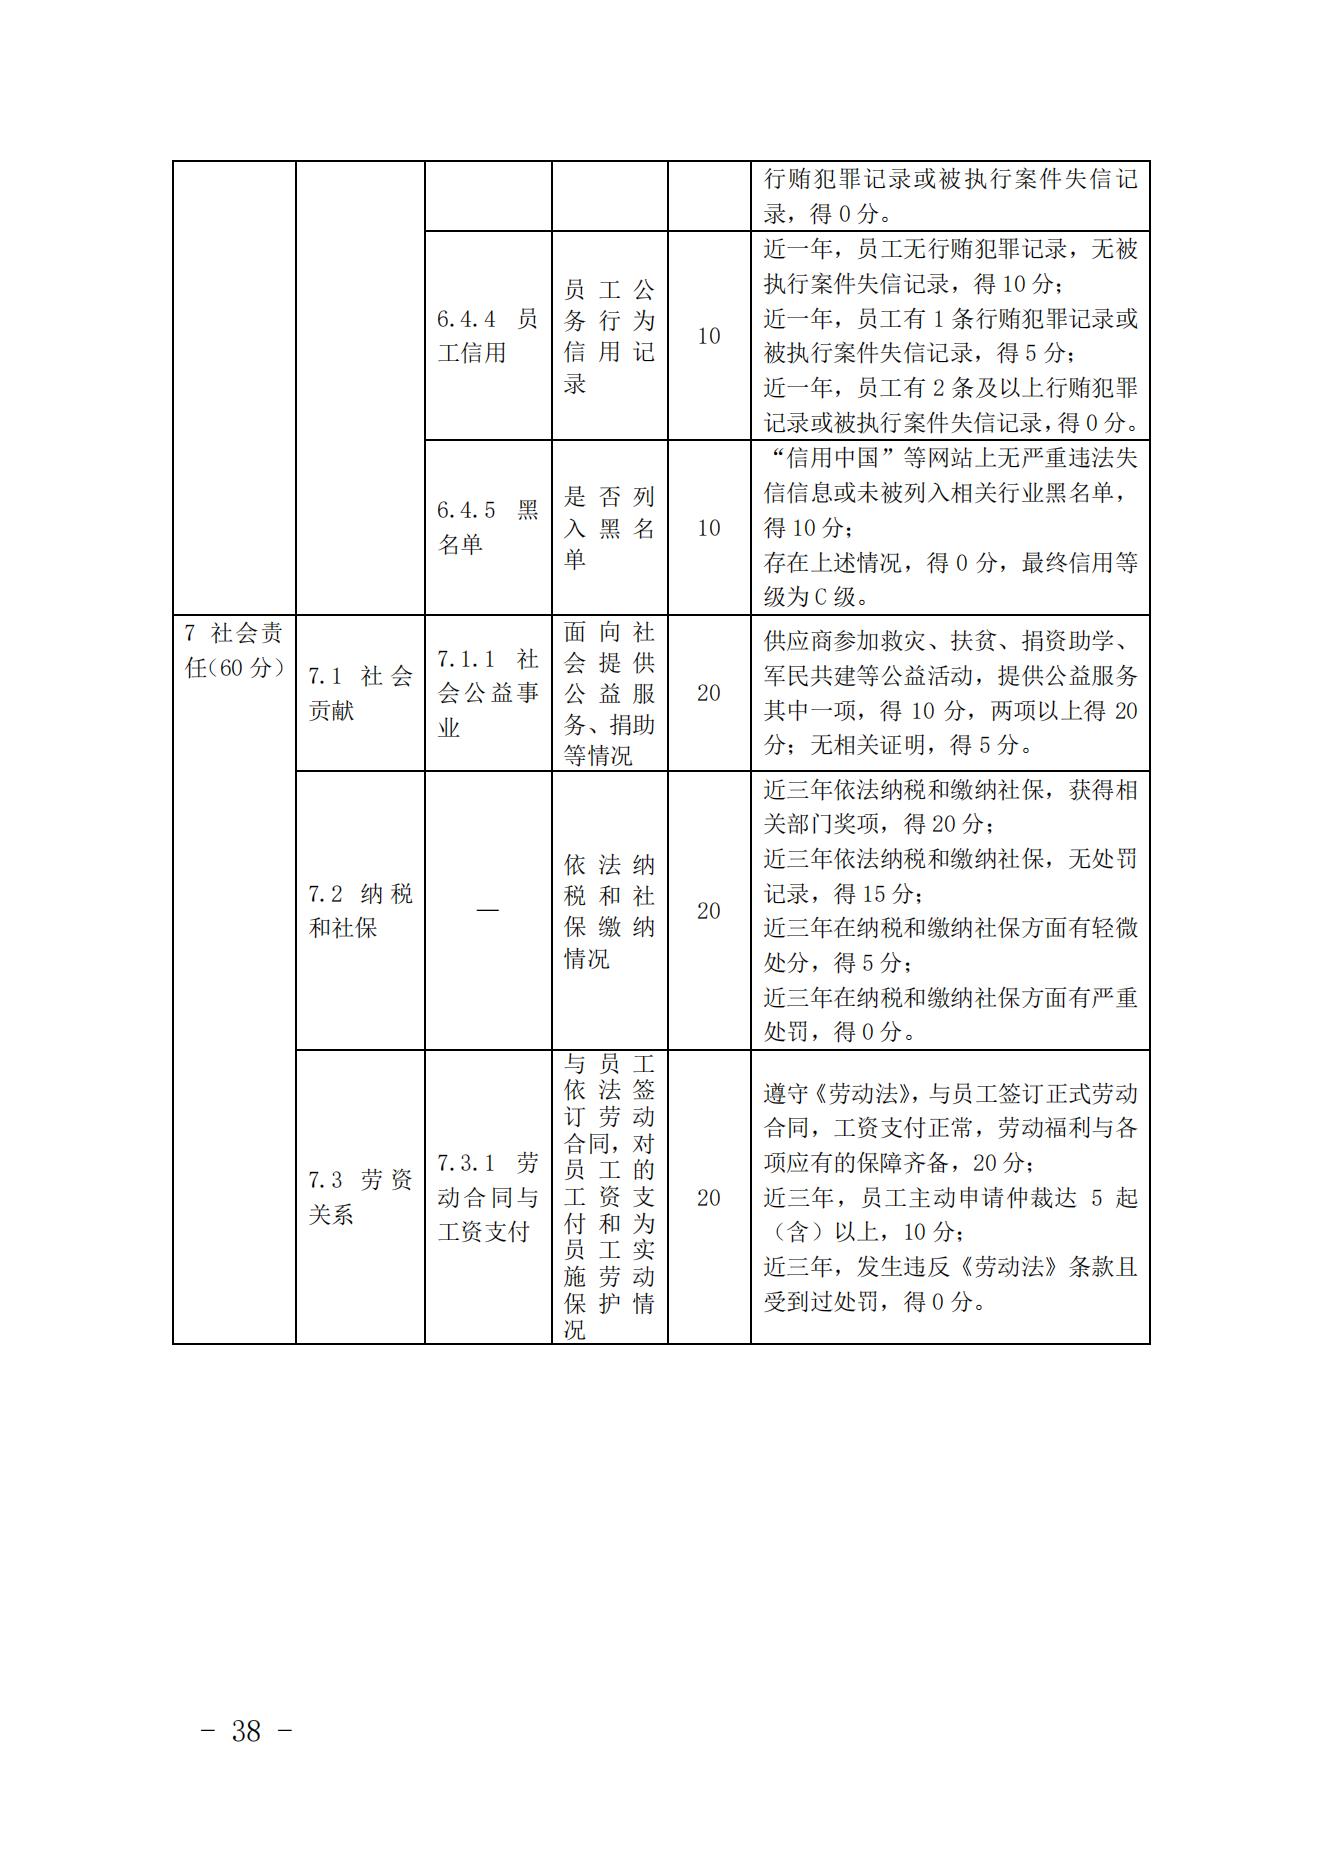 关于印发《中国核能行业协会核能行业供应商信用评价管理办法》《中国核能行业协会核能行业供应商信用评价规范》的通知_37.jpg